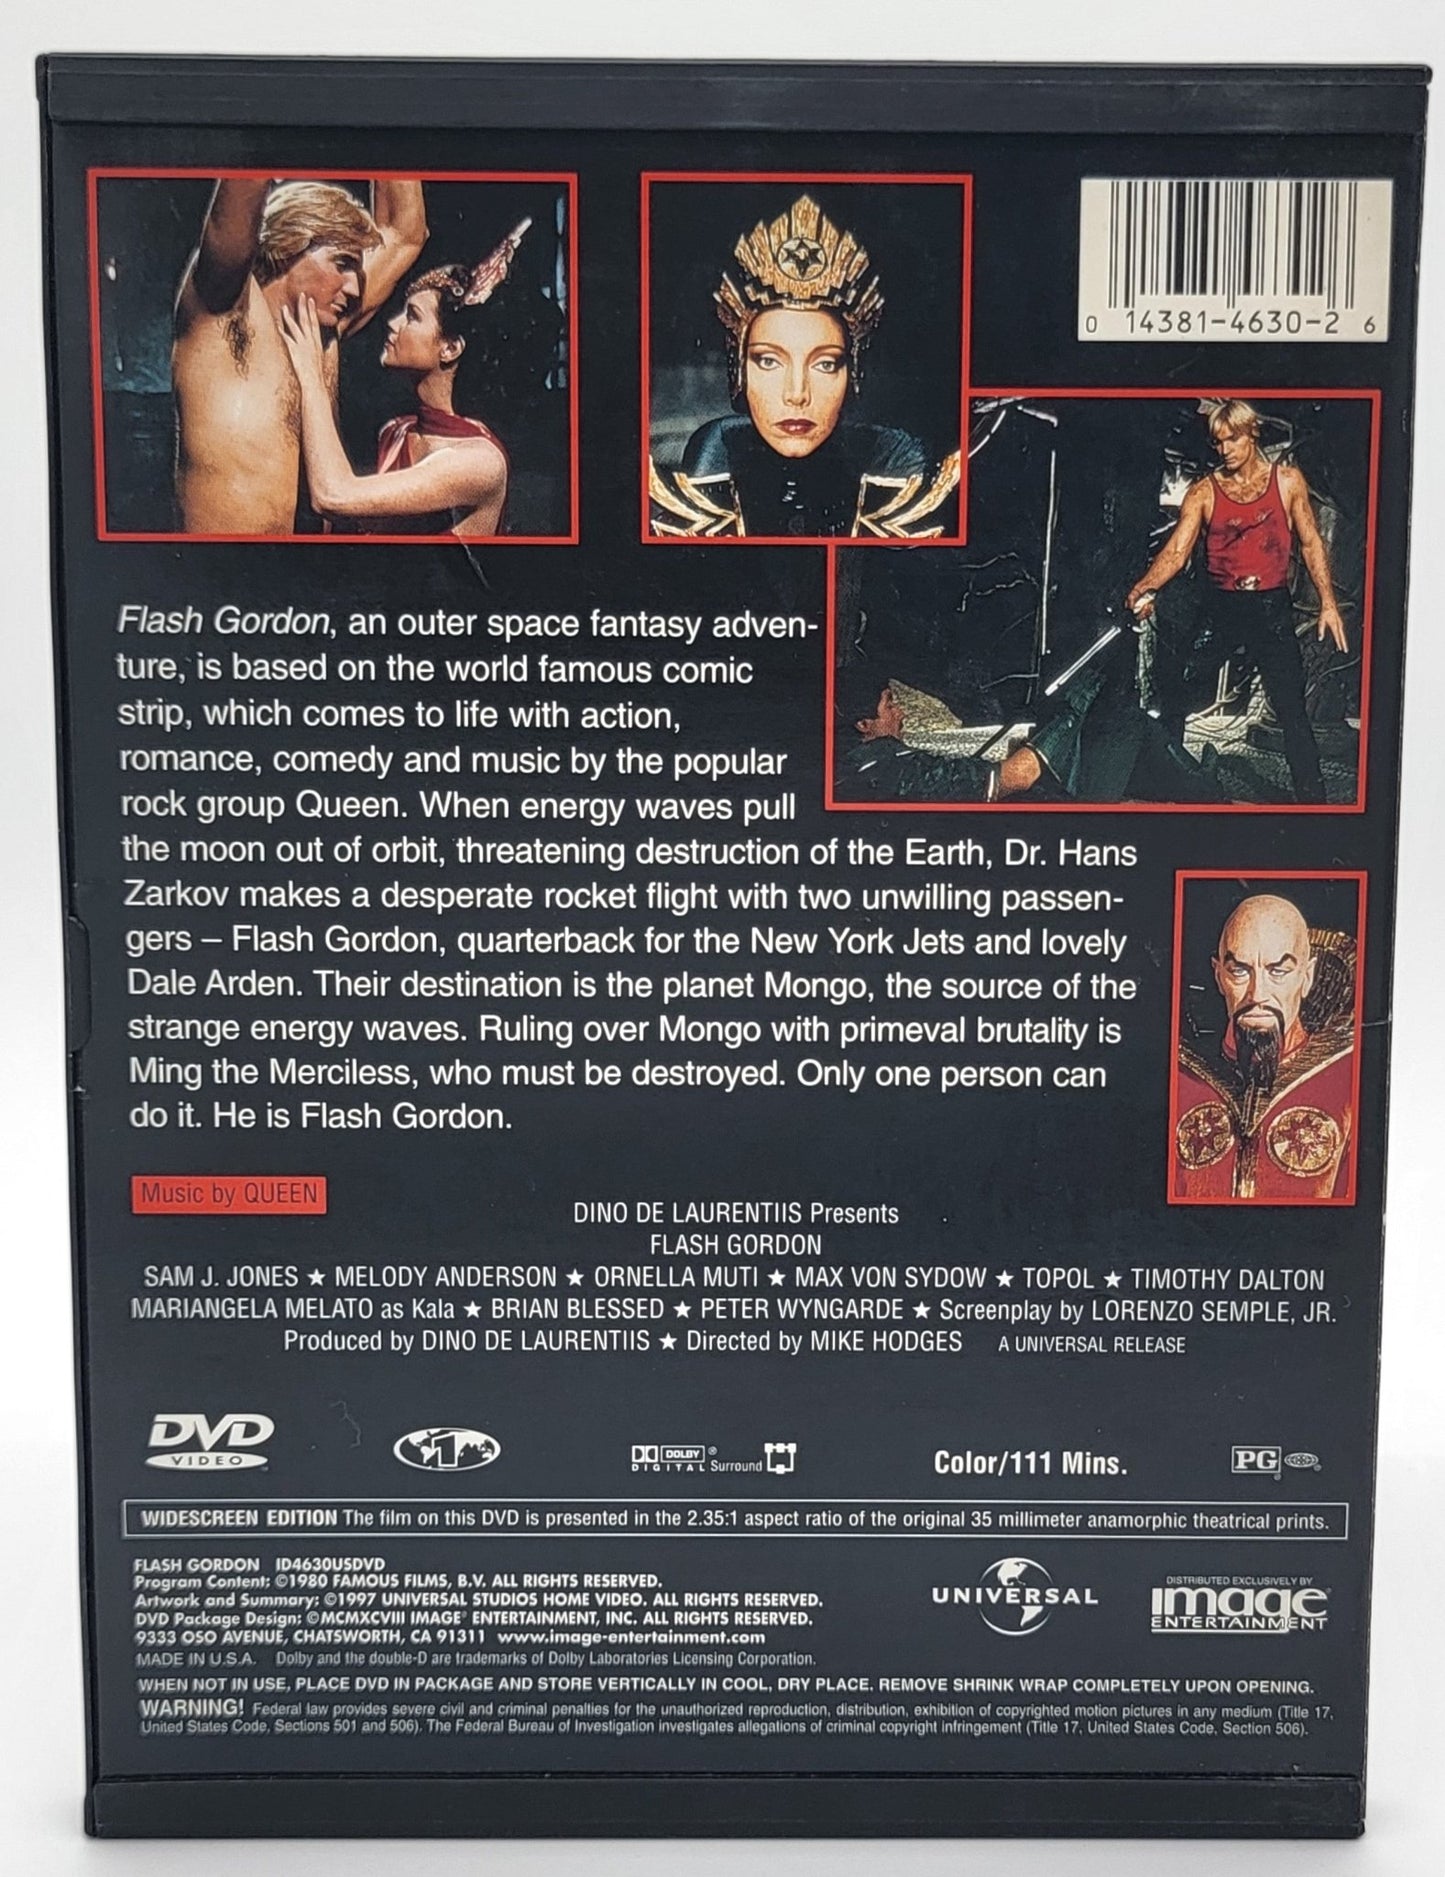 Universal Studios Home Entertainment - Flash Gordon | DVD | Widescreen - DVD - Steady Bunny Shop